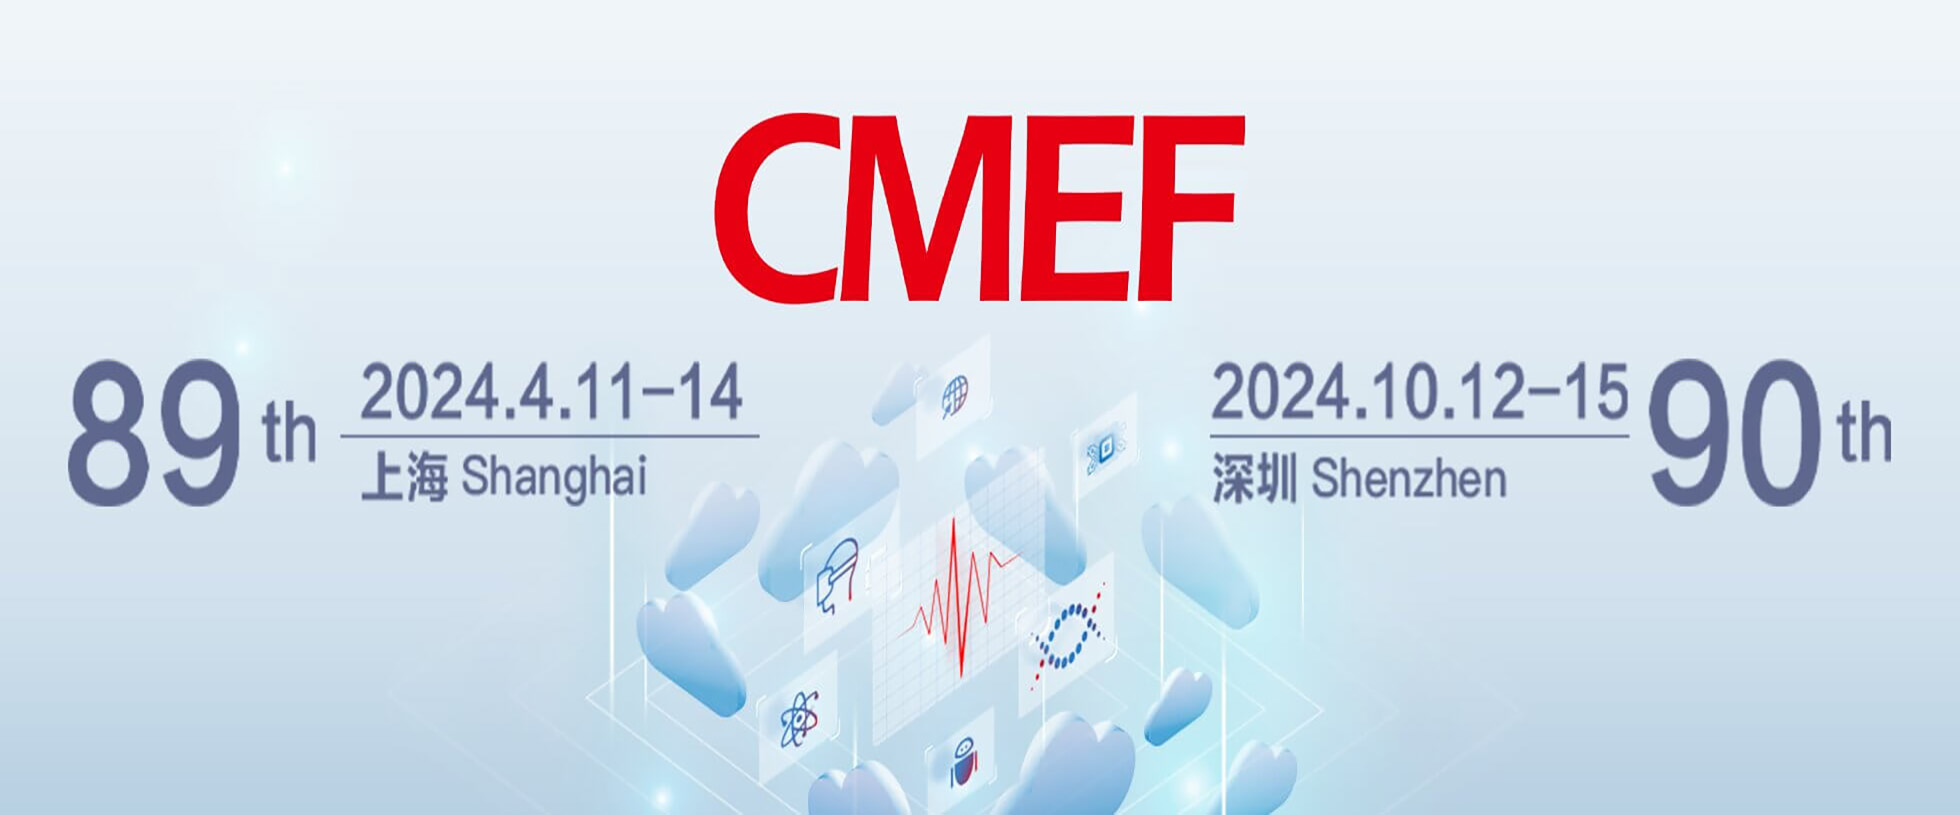 江苏瑞力博期待与您相约【第89届CMEF中国国际医疗器械博览会】